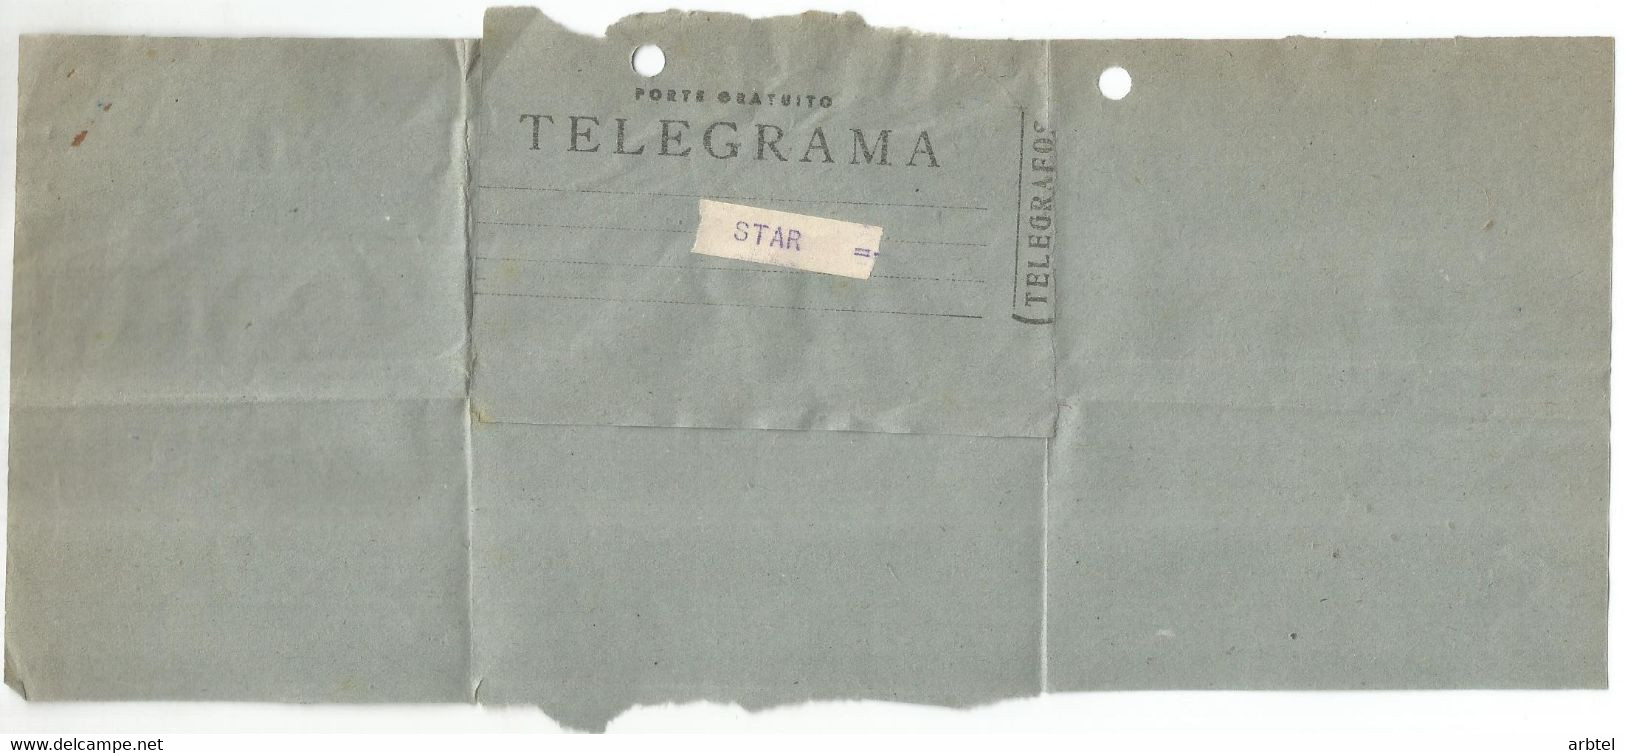 TELEGRAMA DE BARCELONA A EIBAR FABRICA DE ARMAS STAR MAT TELECOMNUNICACIONES GUN FACTORY - Telegraph